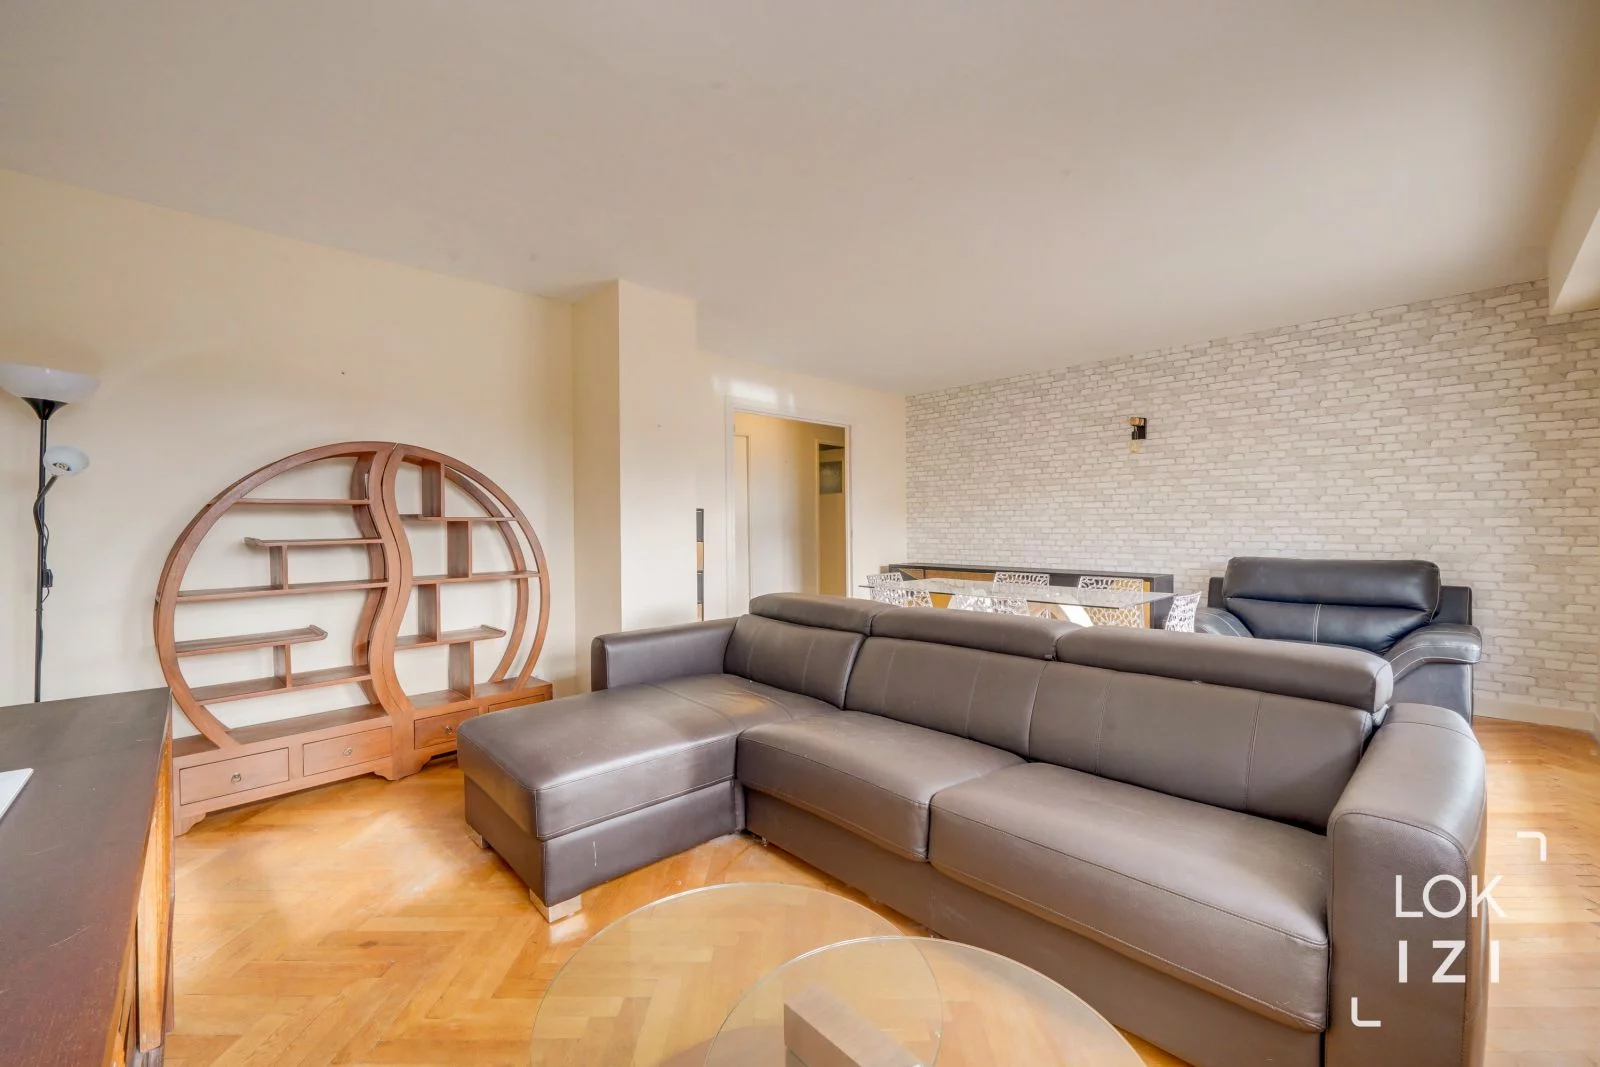 Location appartement 3 pièces meublé 73m² (Bordeaux -Saint Jean)